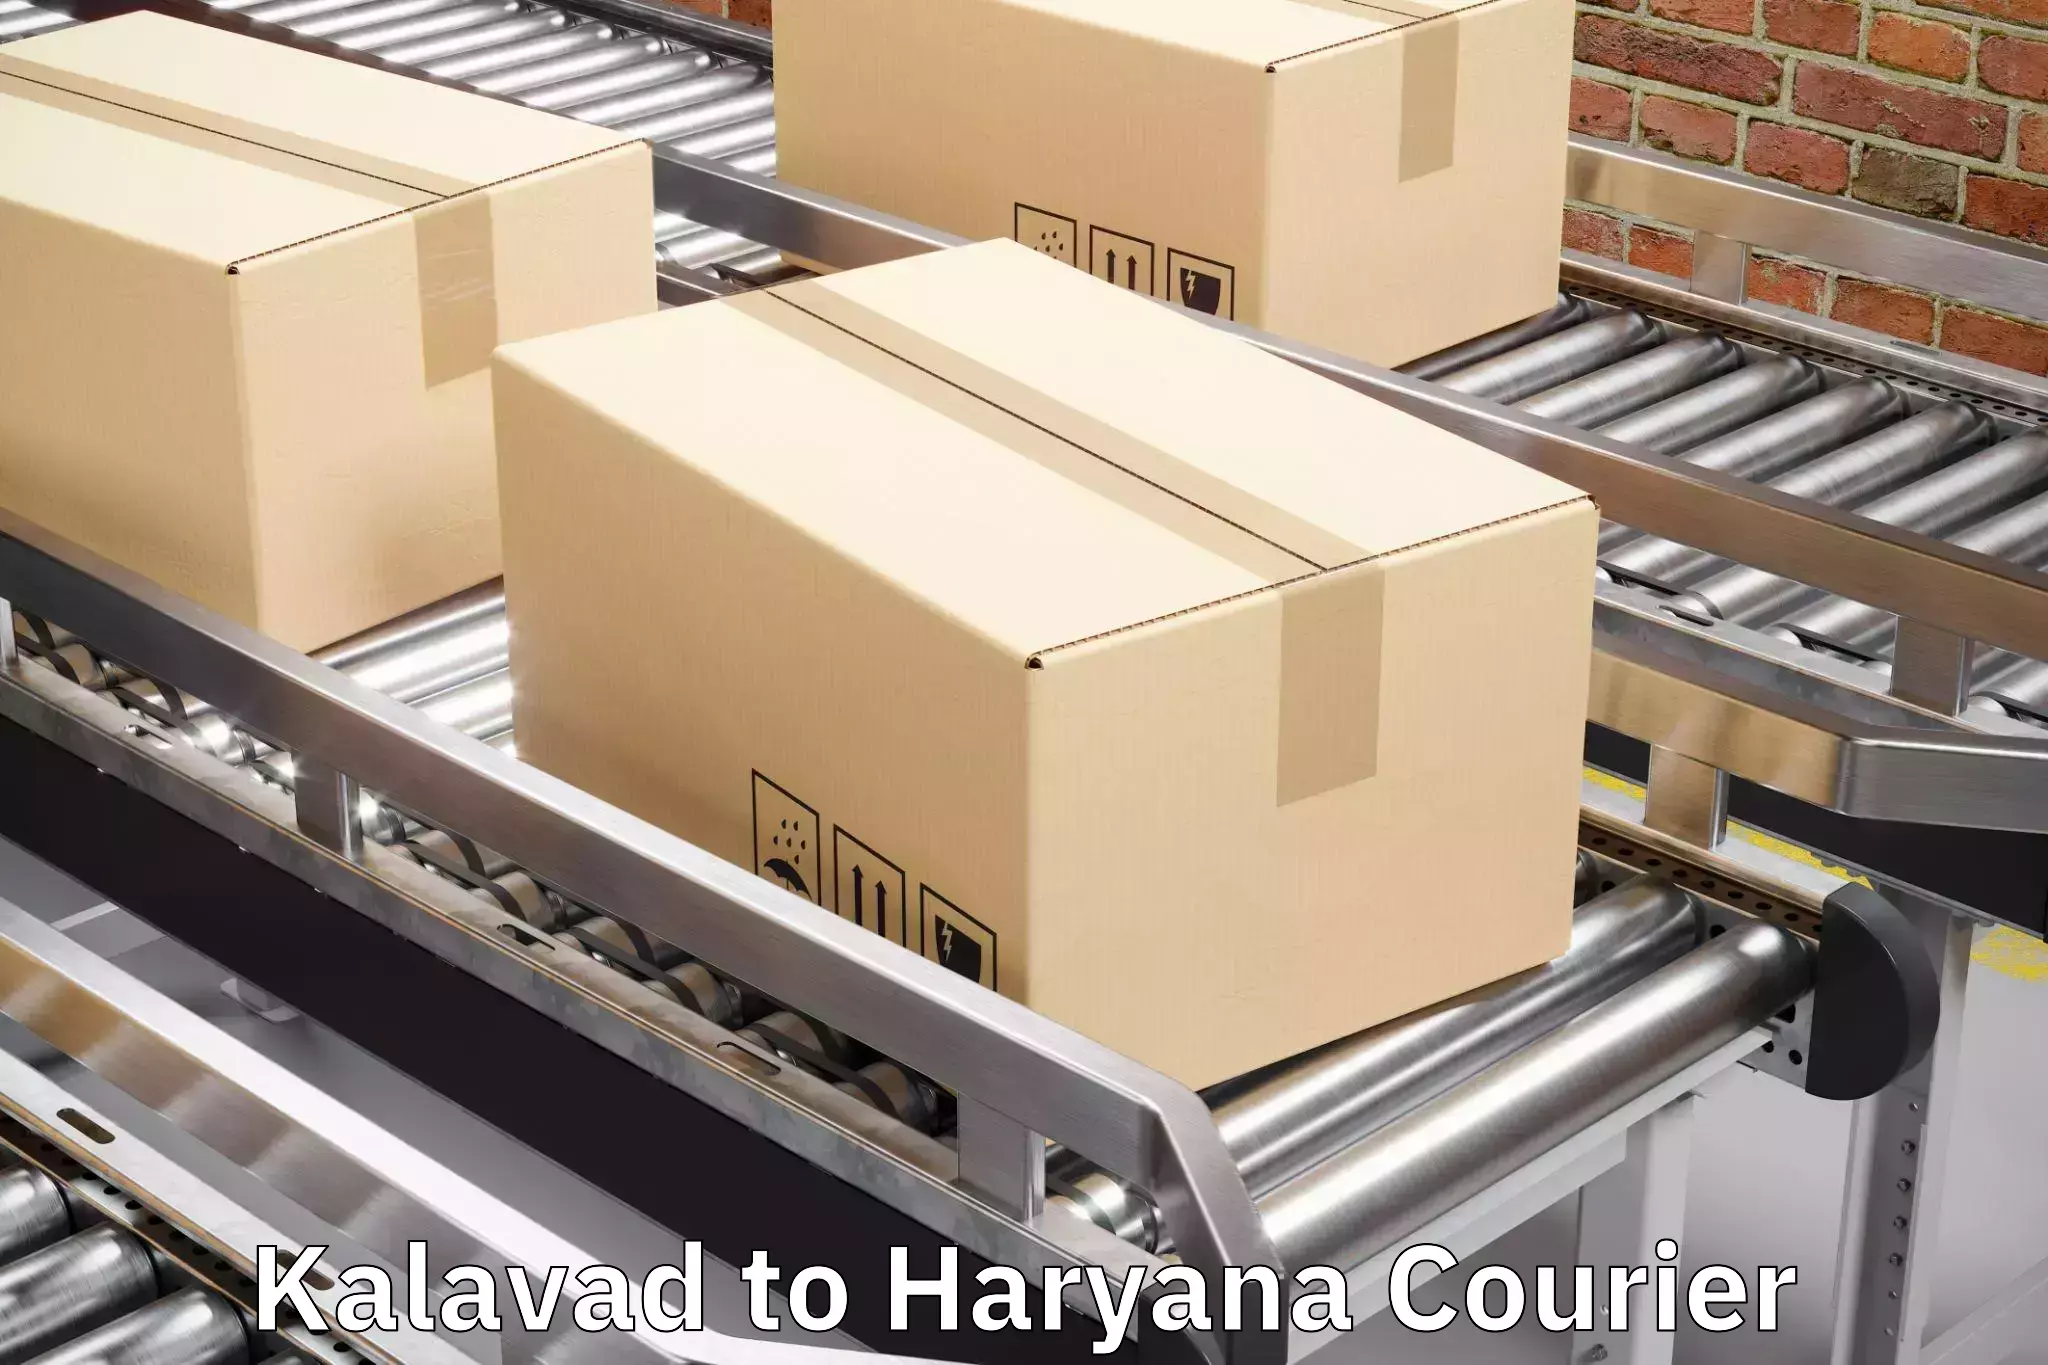 Baggage courier service Kalavad to Chaudhary Charan Singh Haryana Agricultural University Hisar